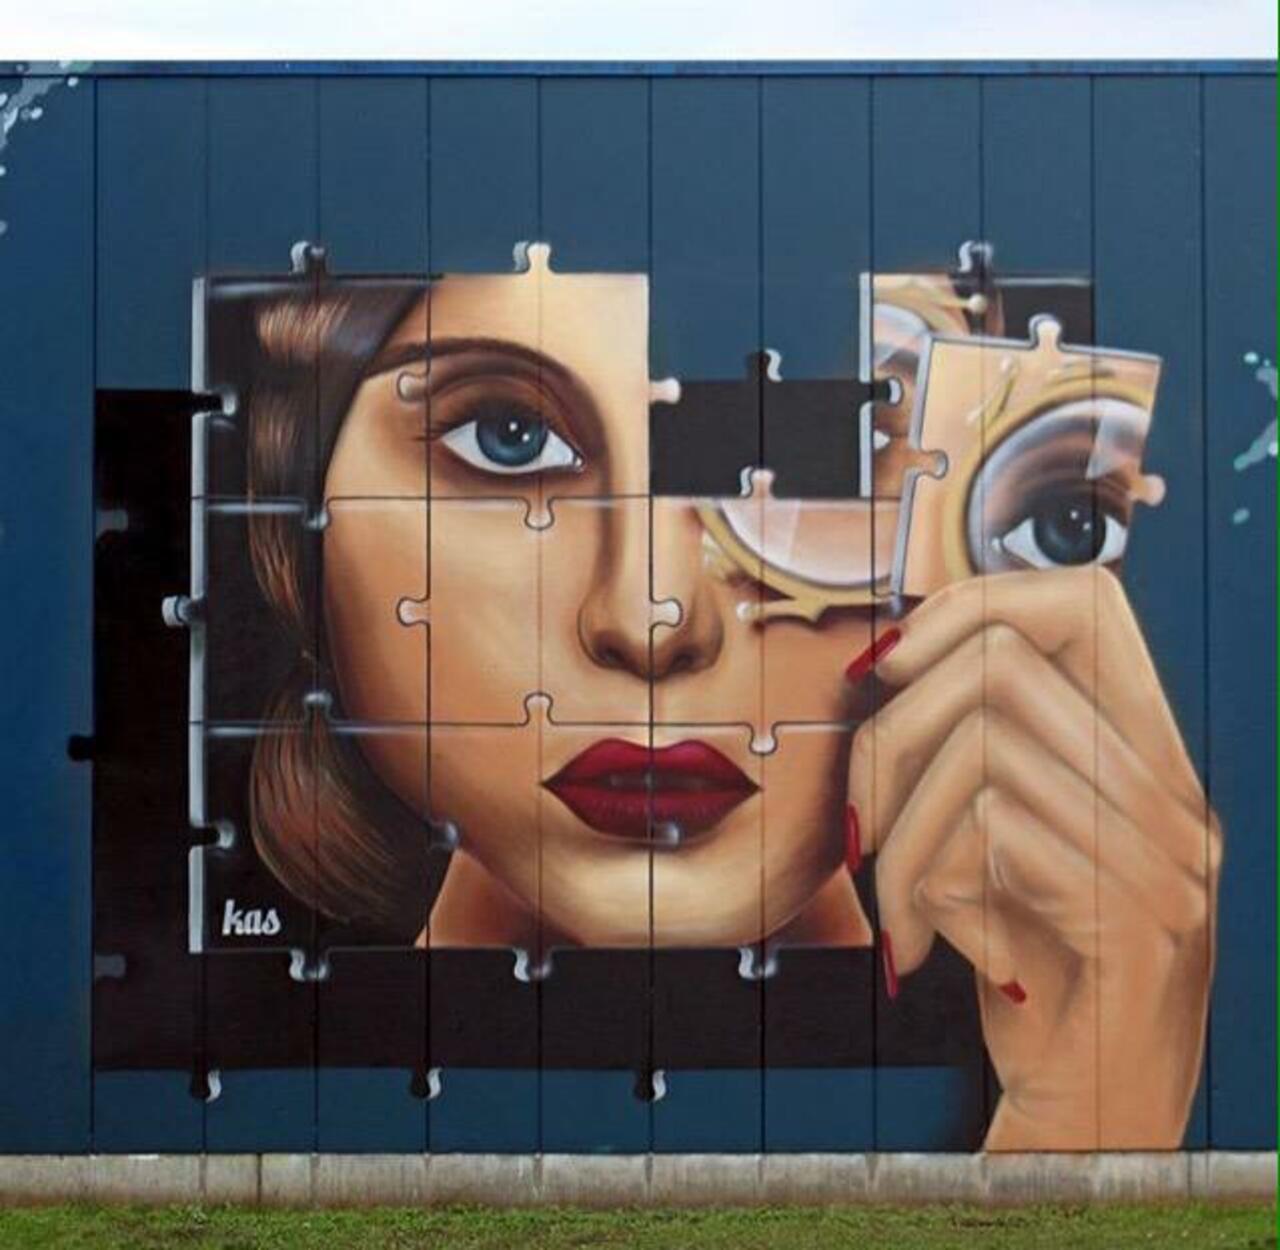 Kas Art's new Street Art "Piece of me" in Aalst Belgium 

#art #graffiti #mural #streetart http://t.co/nccJvCwp1A